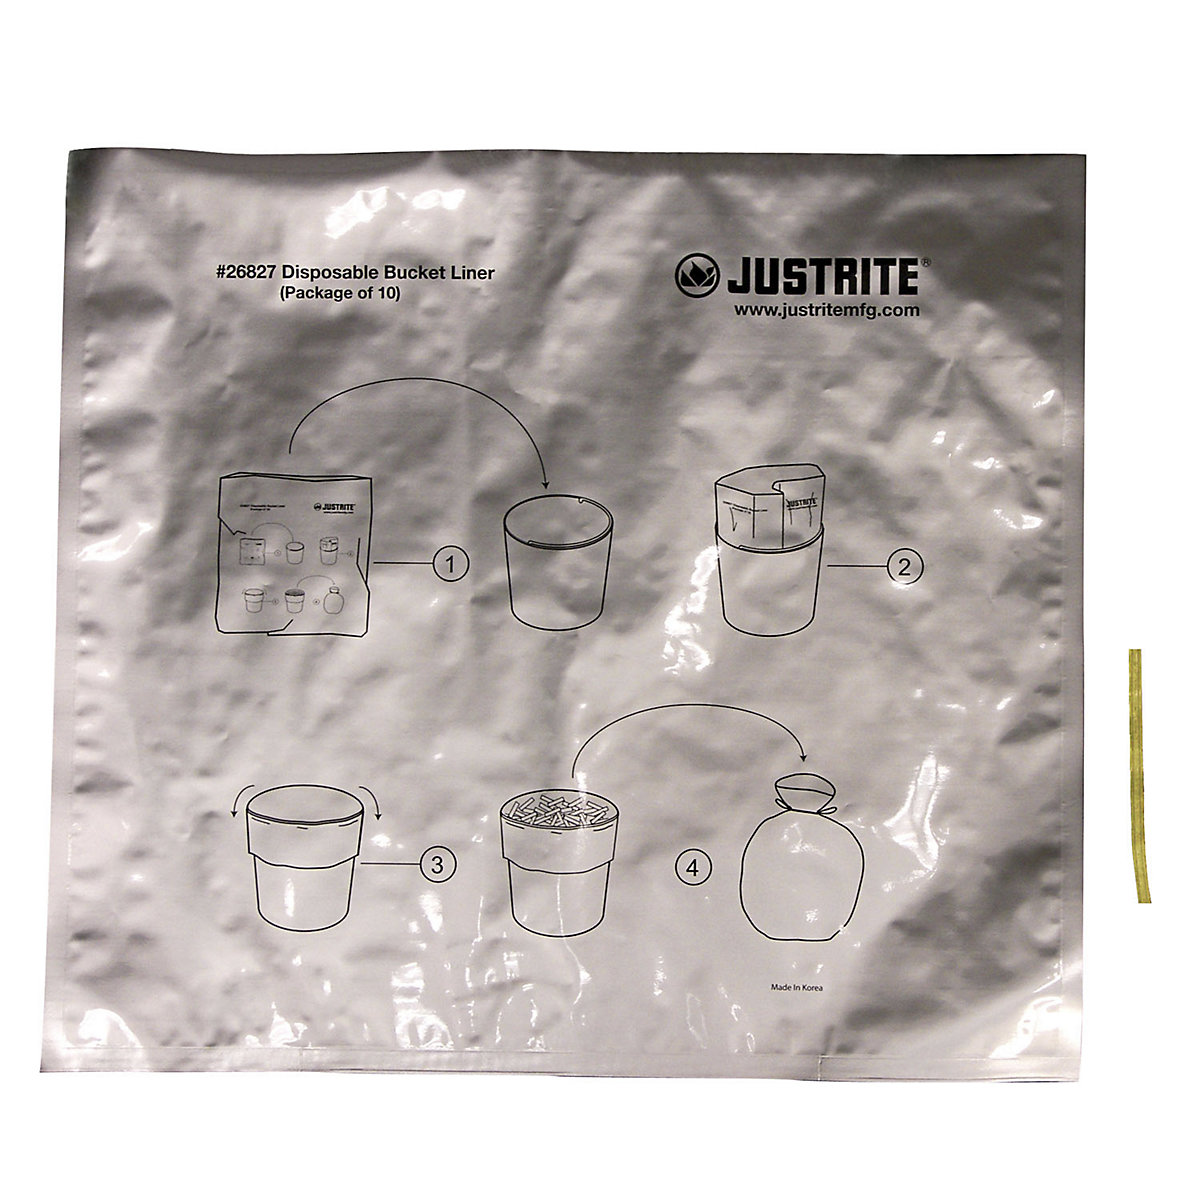 Sacchetti in alluminio per rifiuti speciali per posacenere autoportanti – Justrite